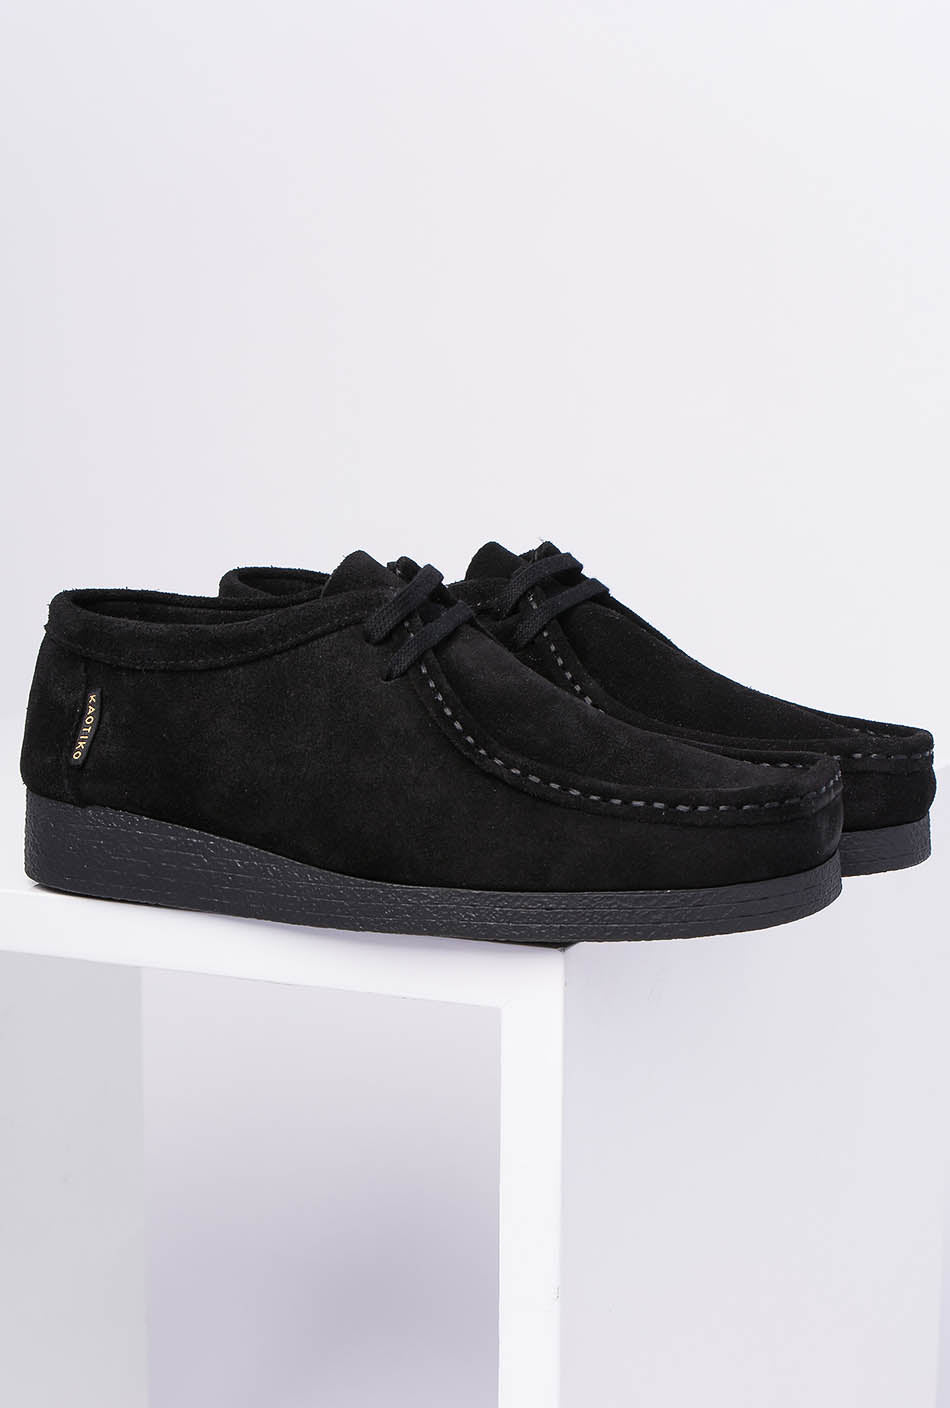 Austin shoes black